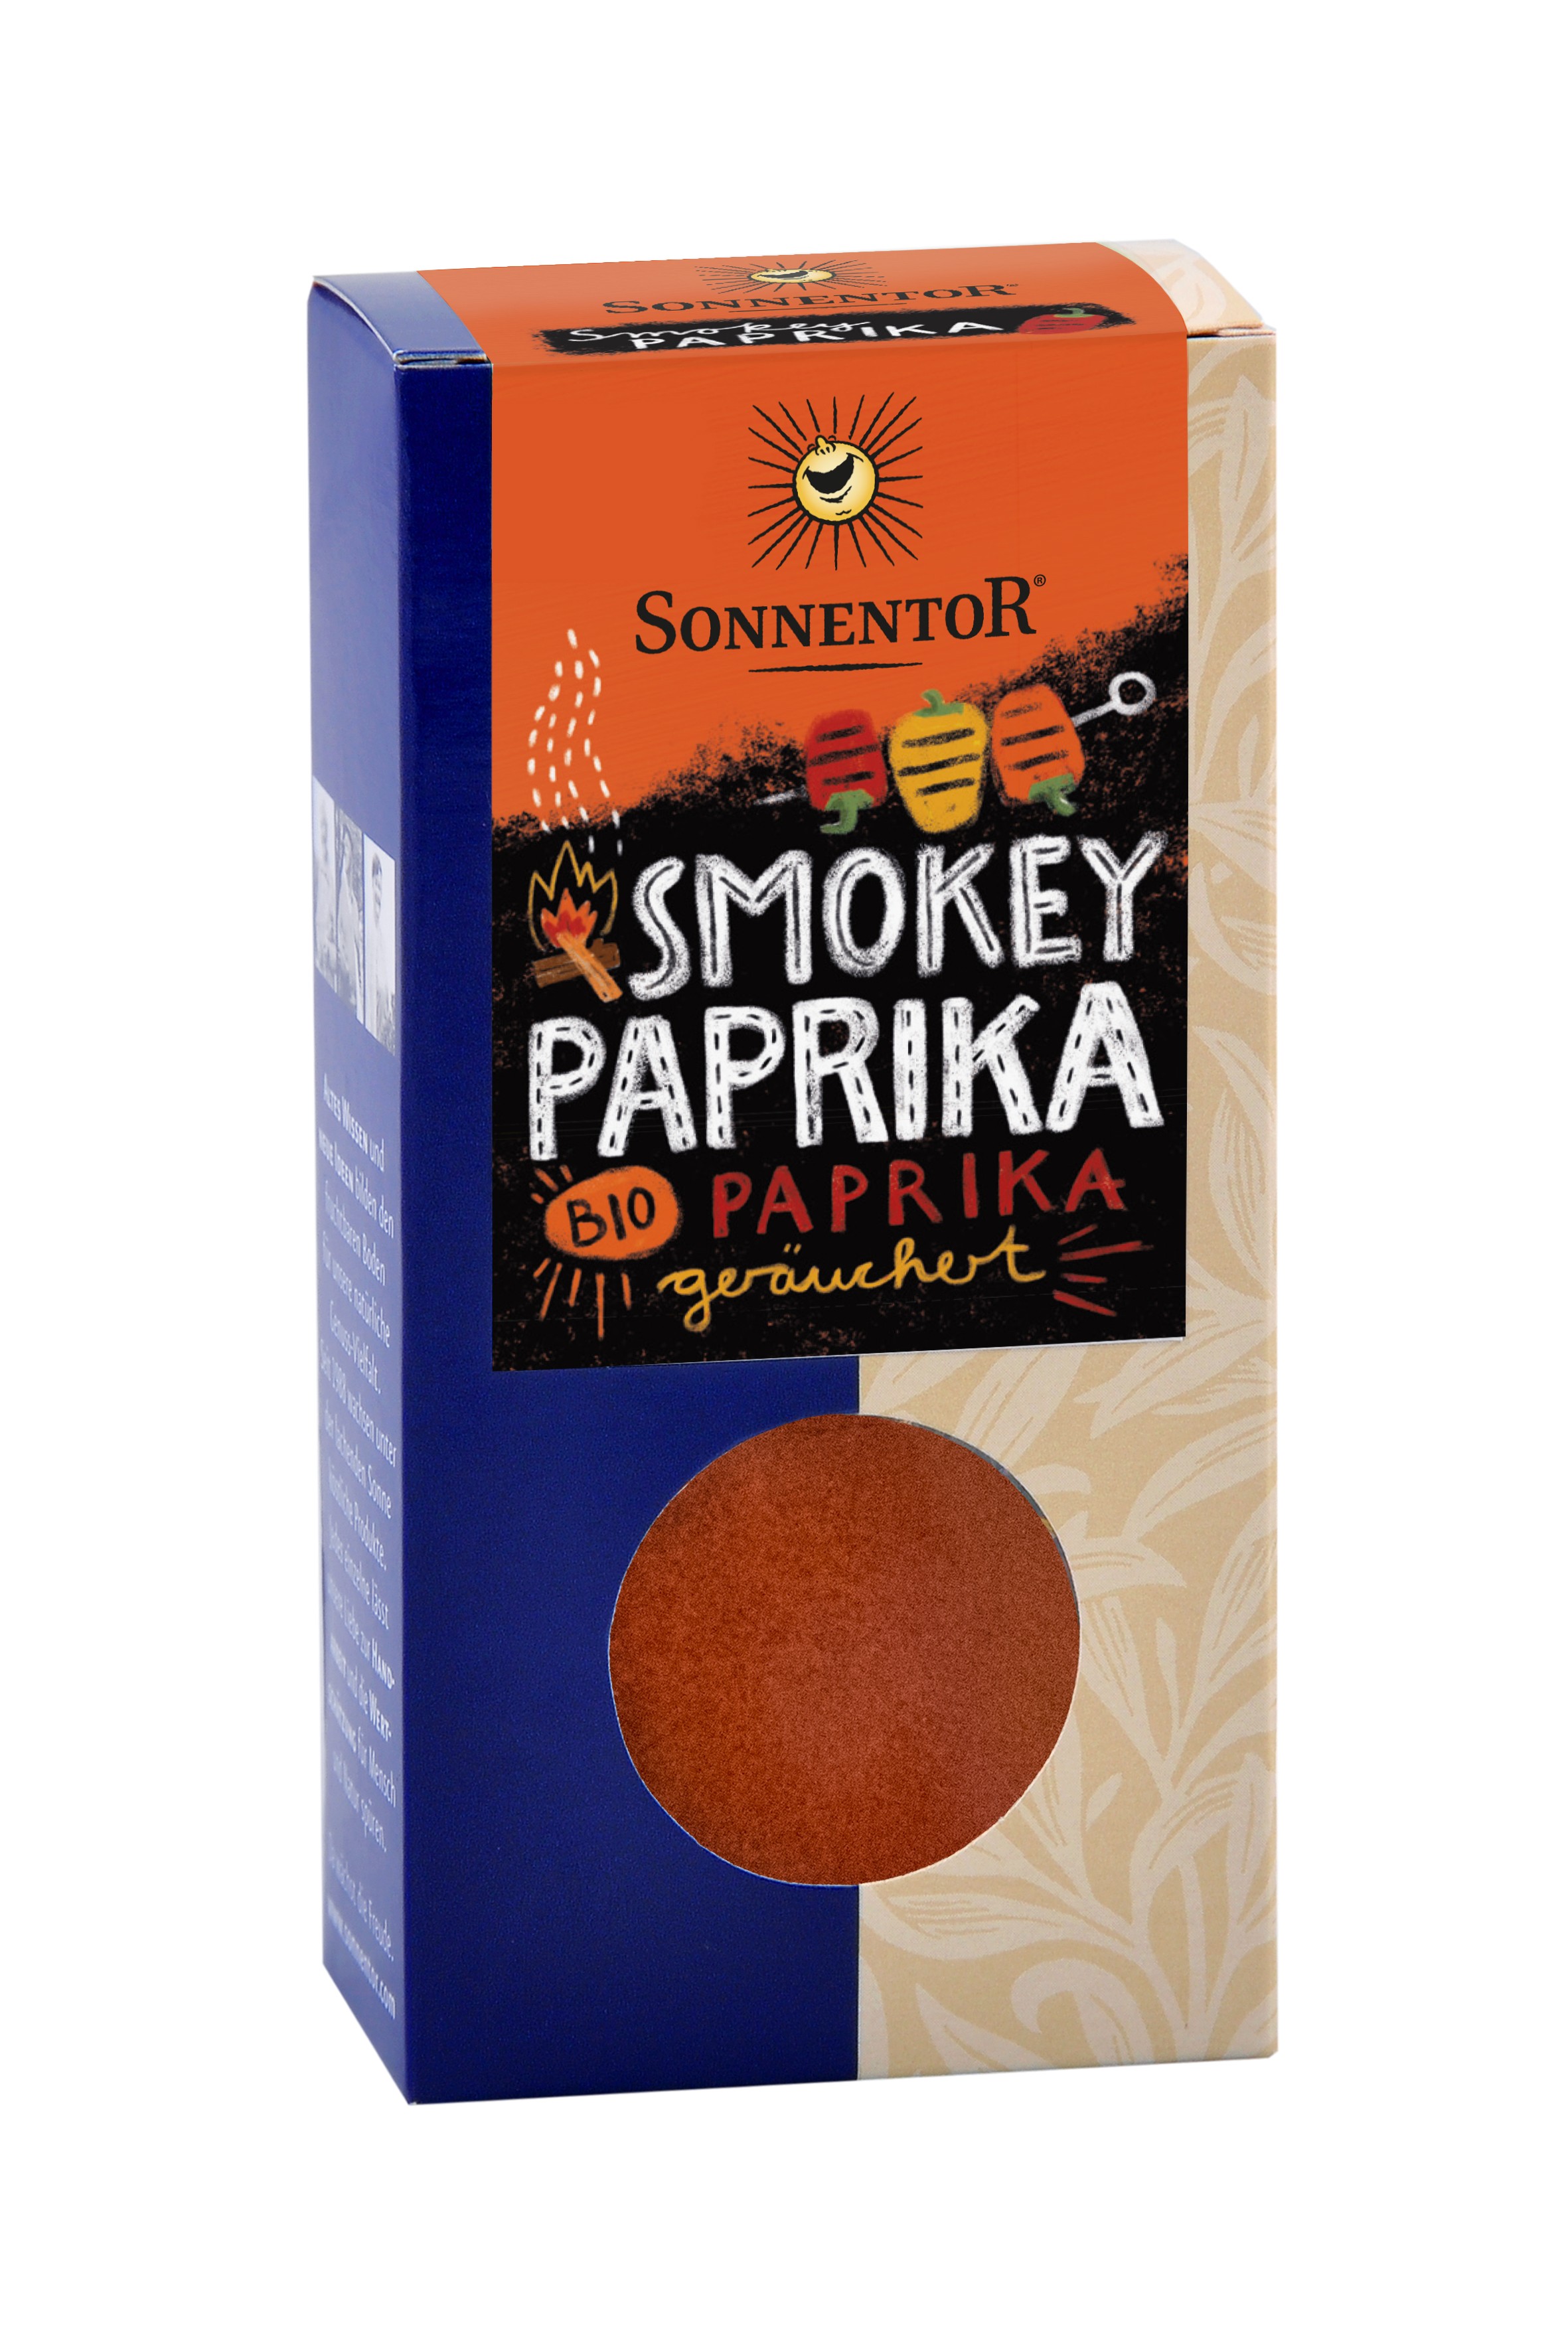 Smokey Paprika Grillgewürz 70g bio